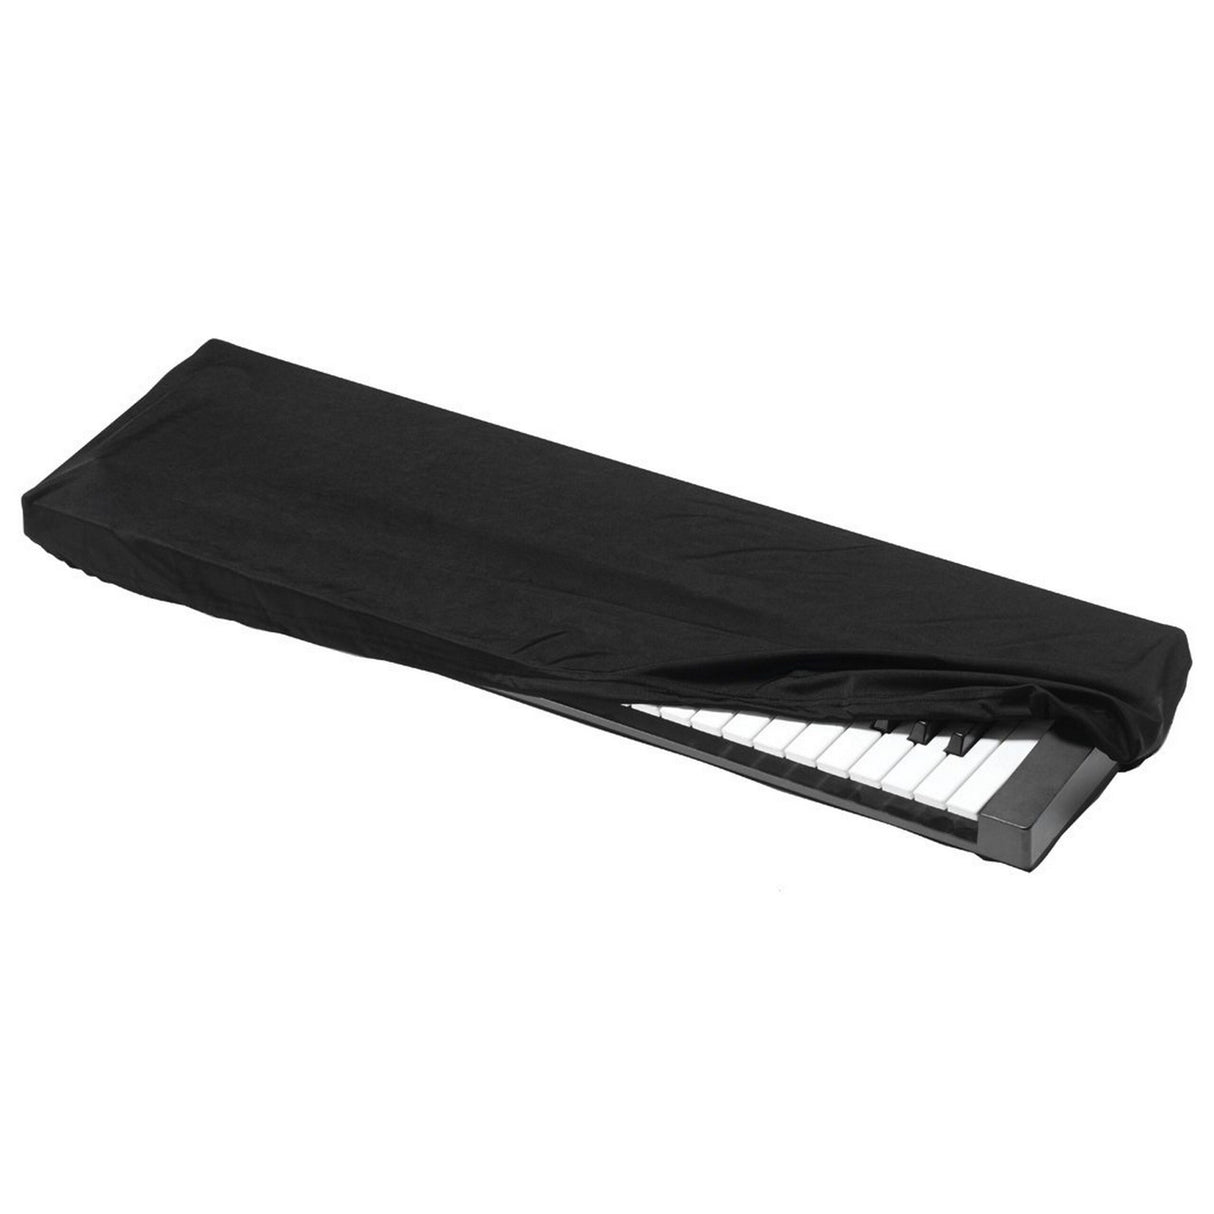 Kaces KKC-LG Stretchy Keyboard Dust Cover - Large (76-88 key)